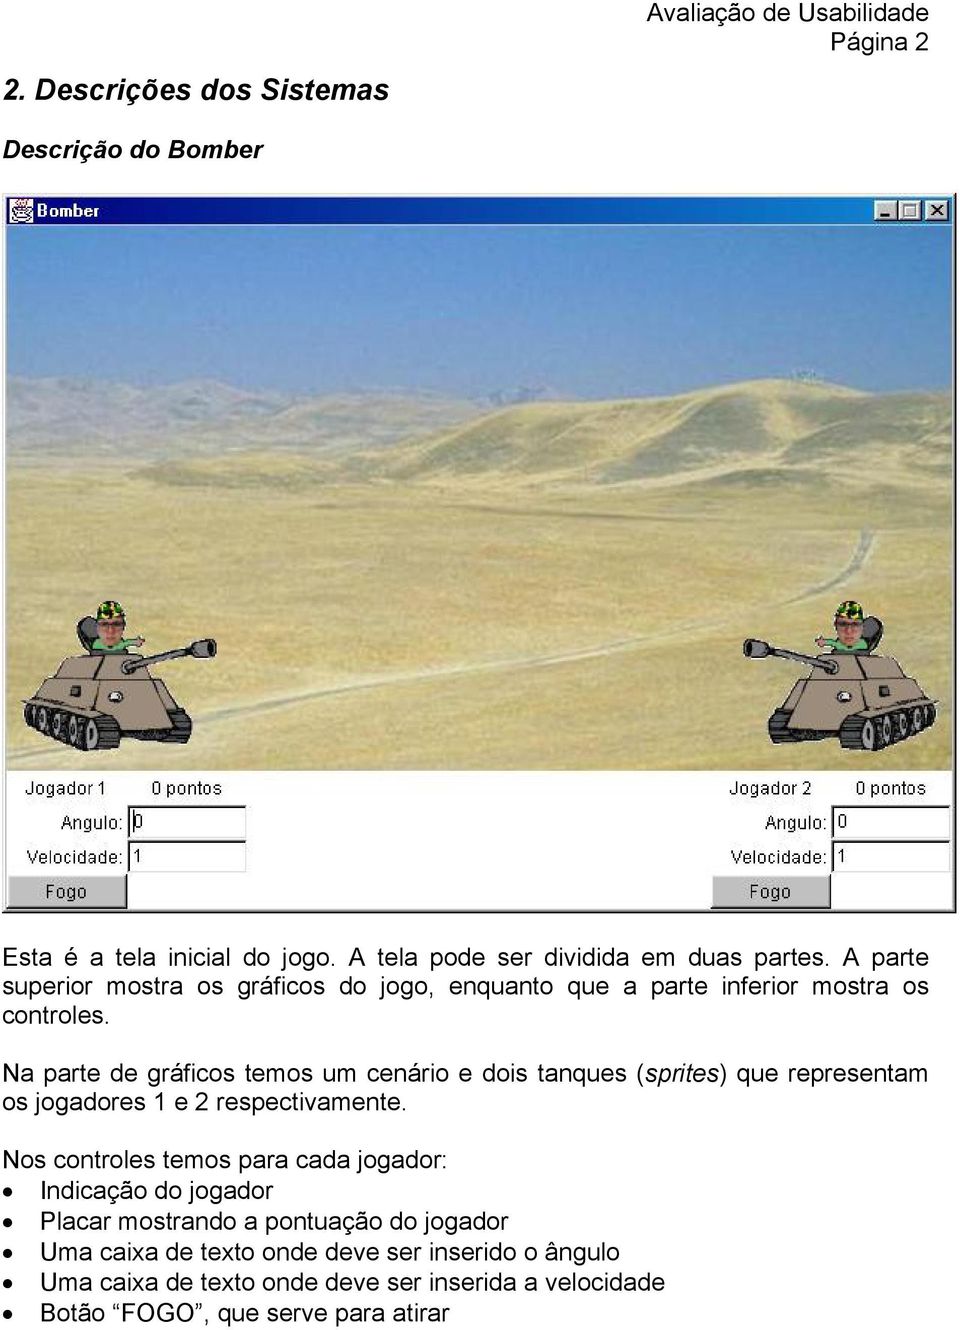 Na parte de gráficos temos um cenário e dois tanques (sprites) que representam os jogadores 1 e 2 respectivamente.